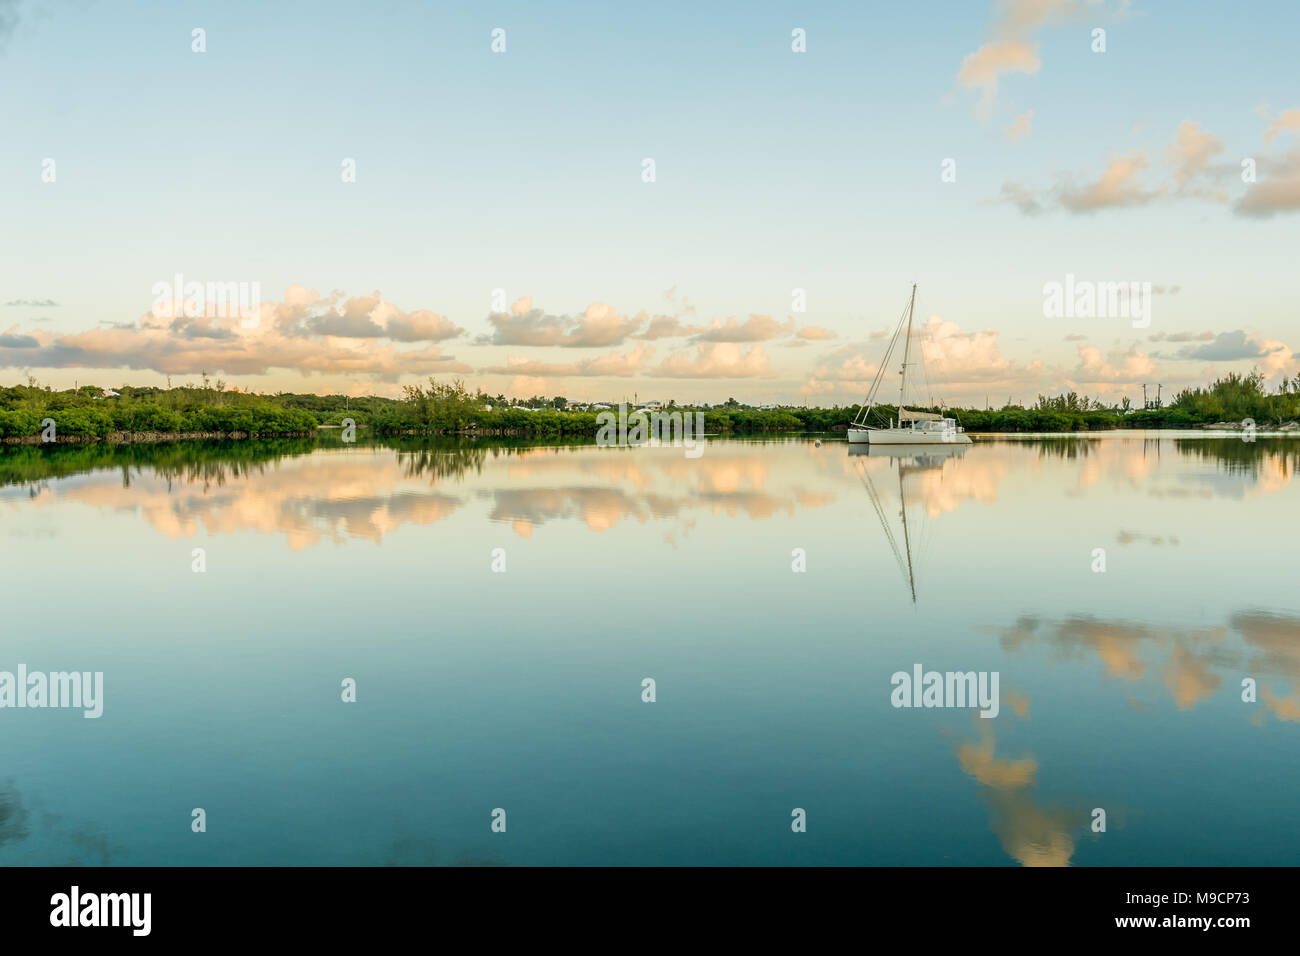 Salz Wasser See an einem schönen sonnigen windstillen Tag übersicht Segelboote mit Spiegel Reflexion auf See Wasser und Mangroven auf dem Hintergrund Stockfoto